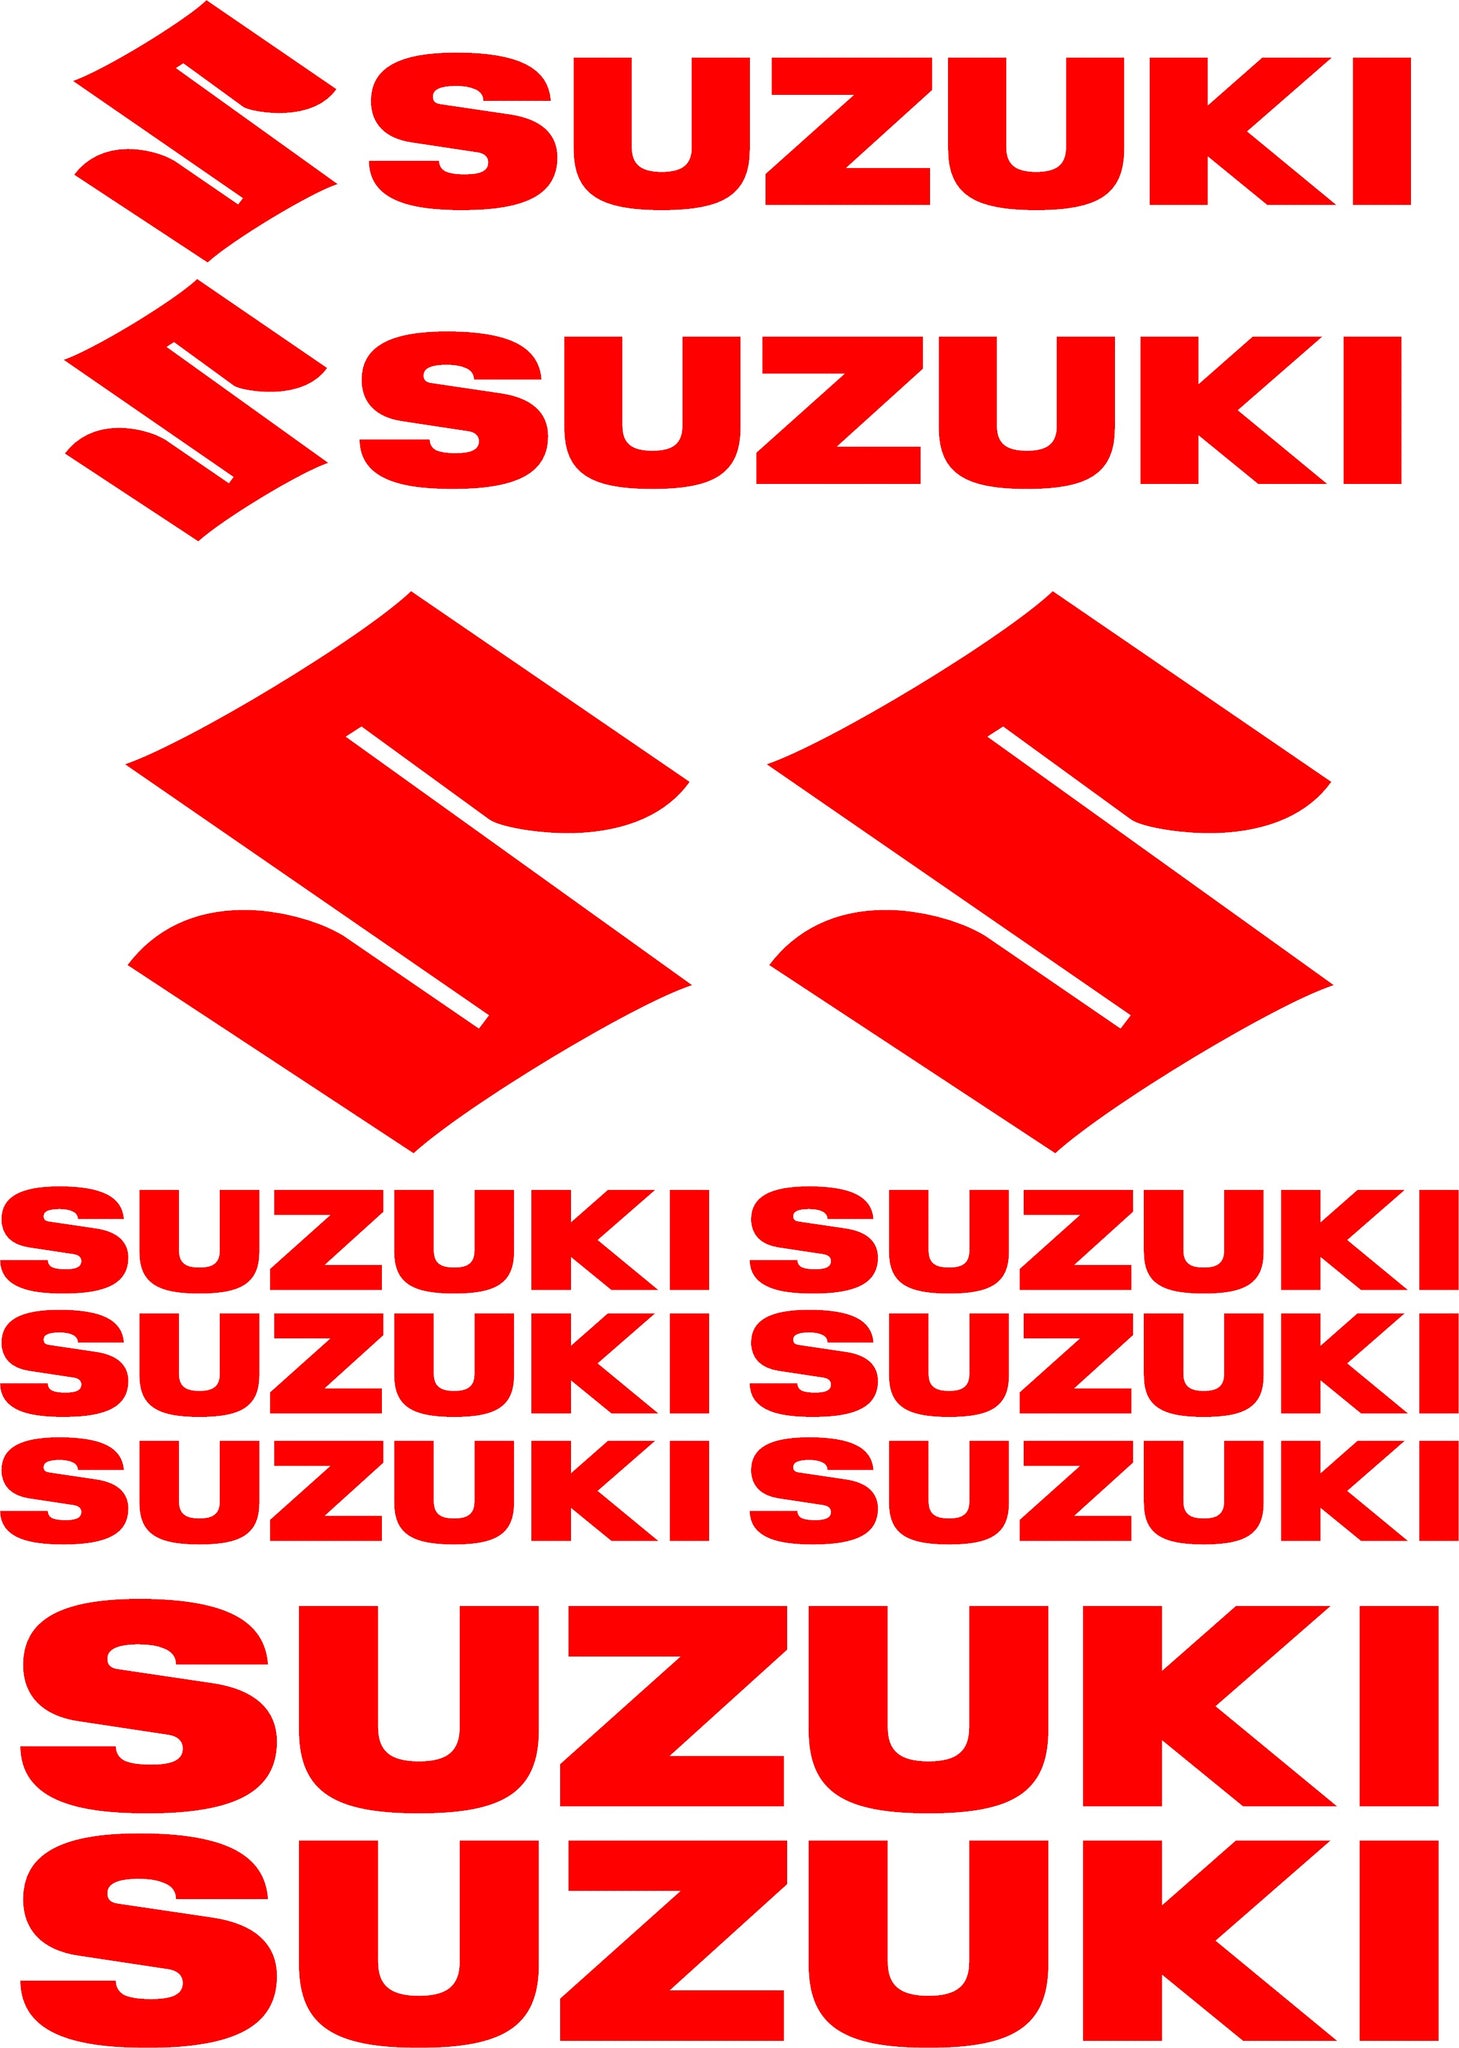 Suzuki S Logo Decal Sticker - AnyDecals.com